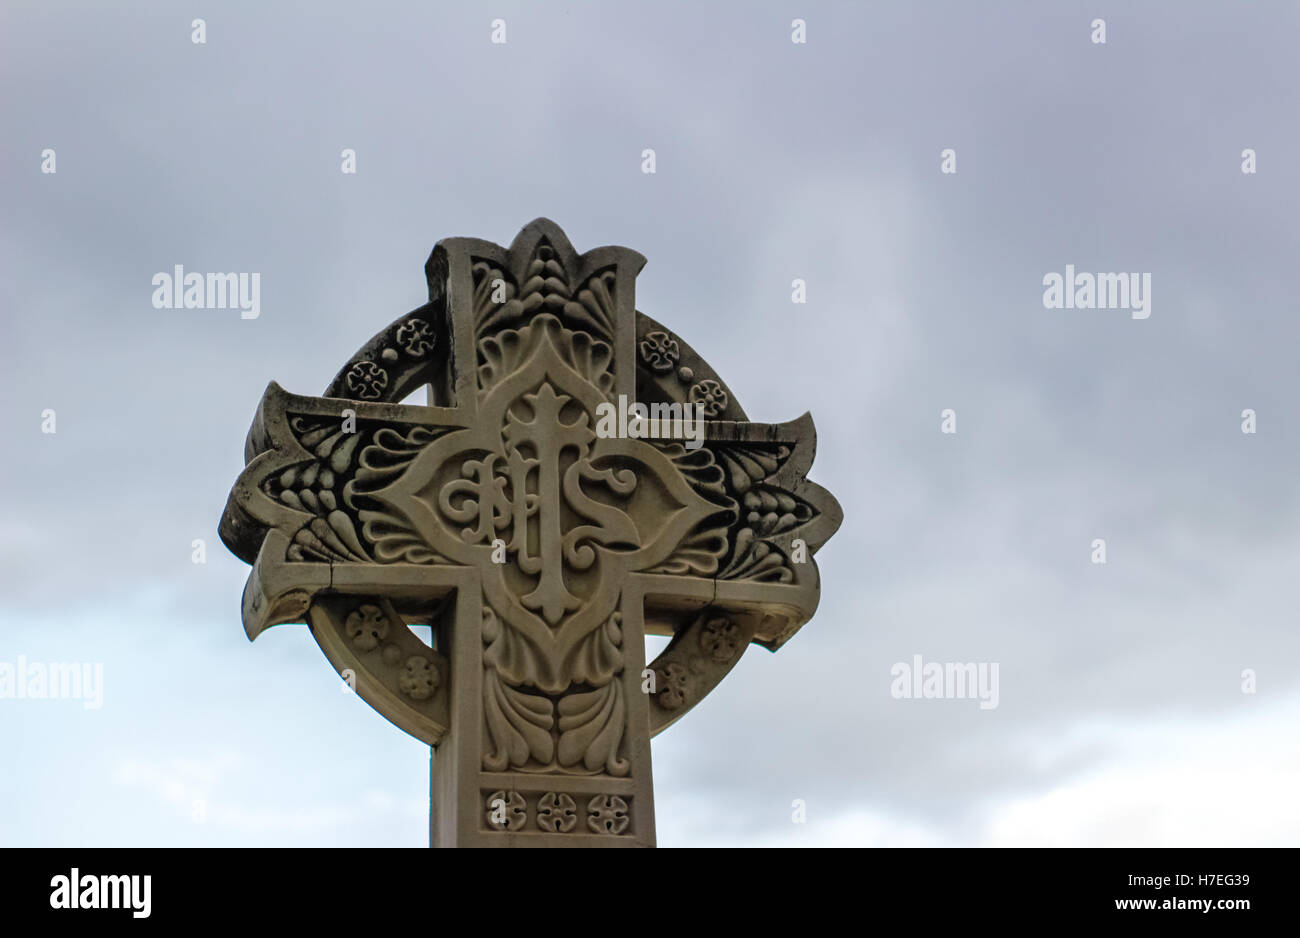 Croix en pierre sculptée avec des symboles religieux Banque D'Images